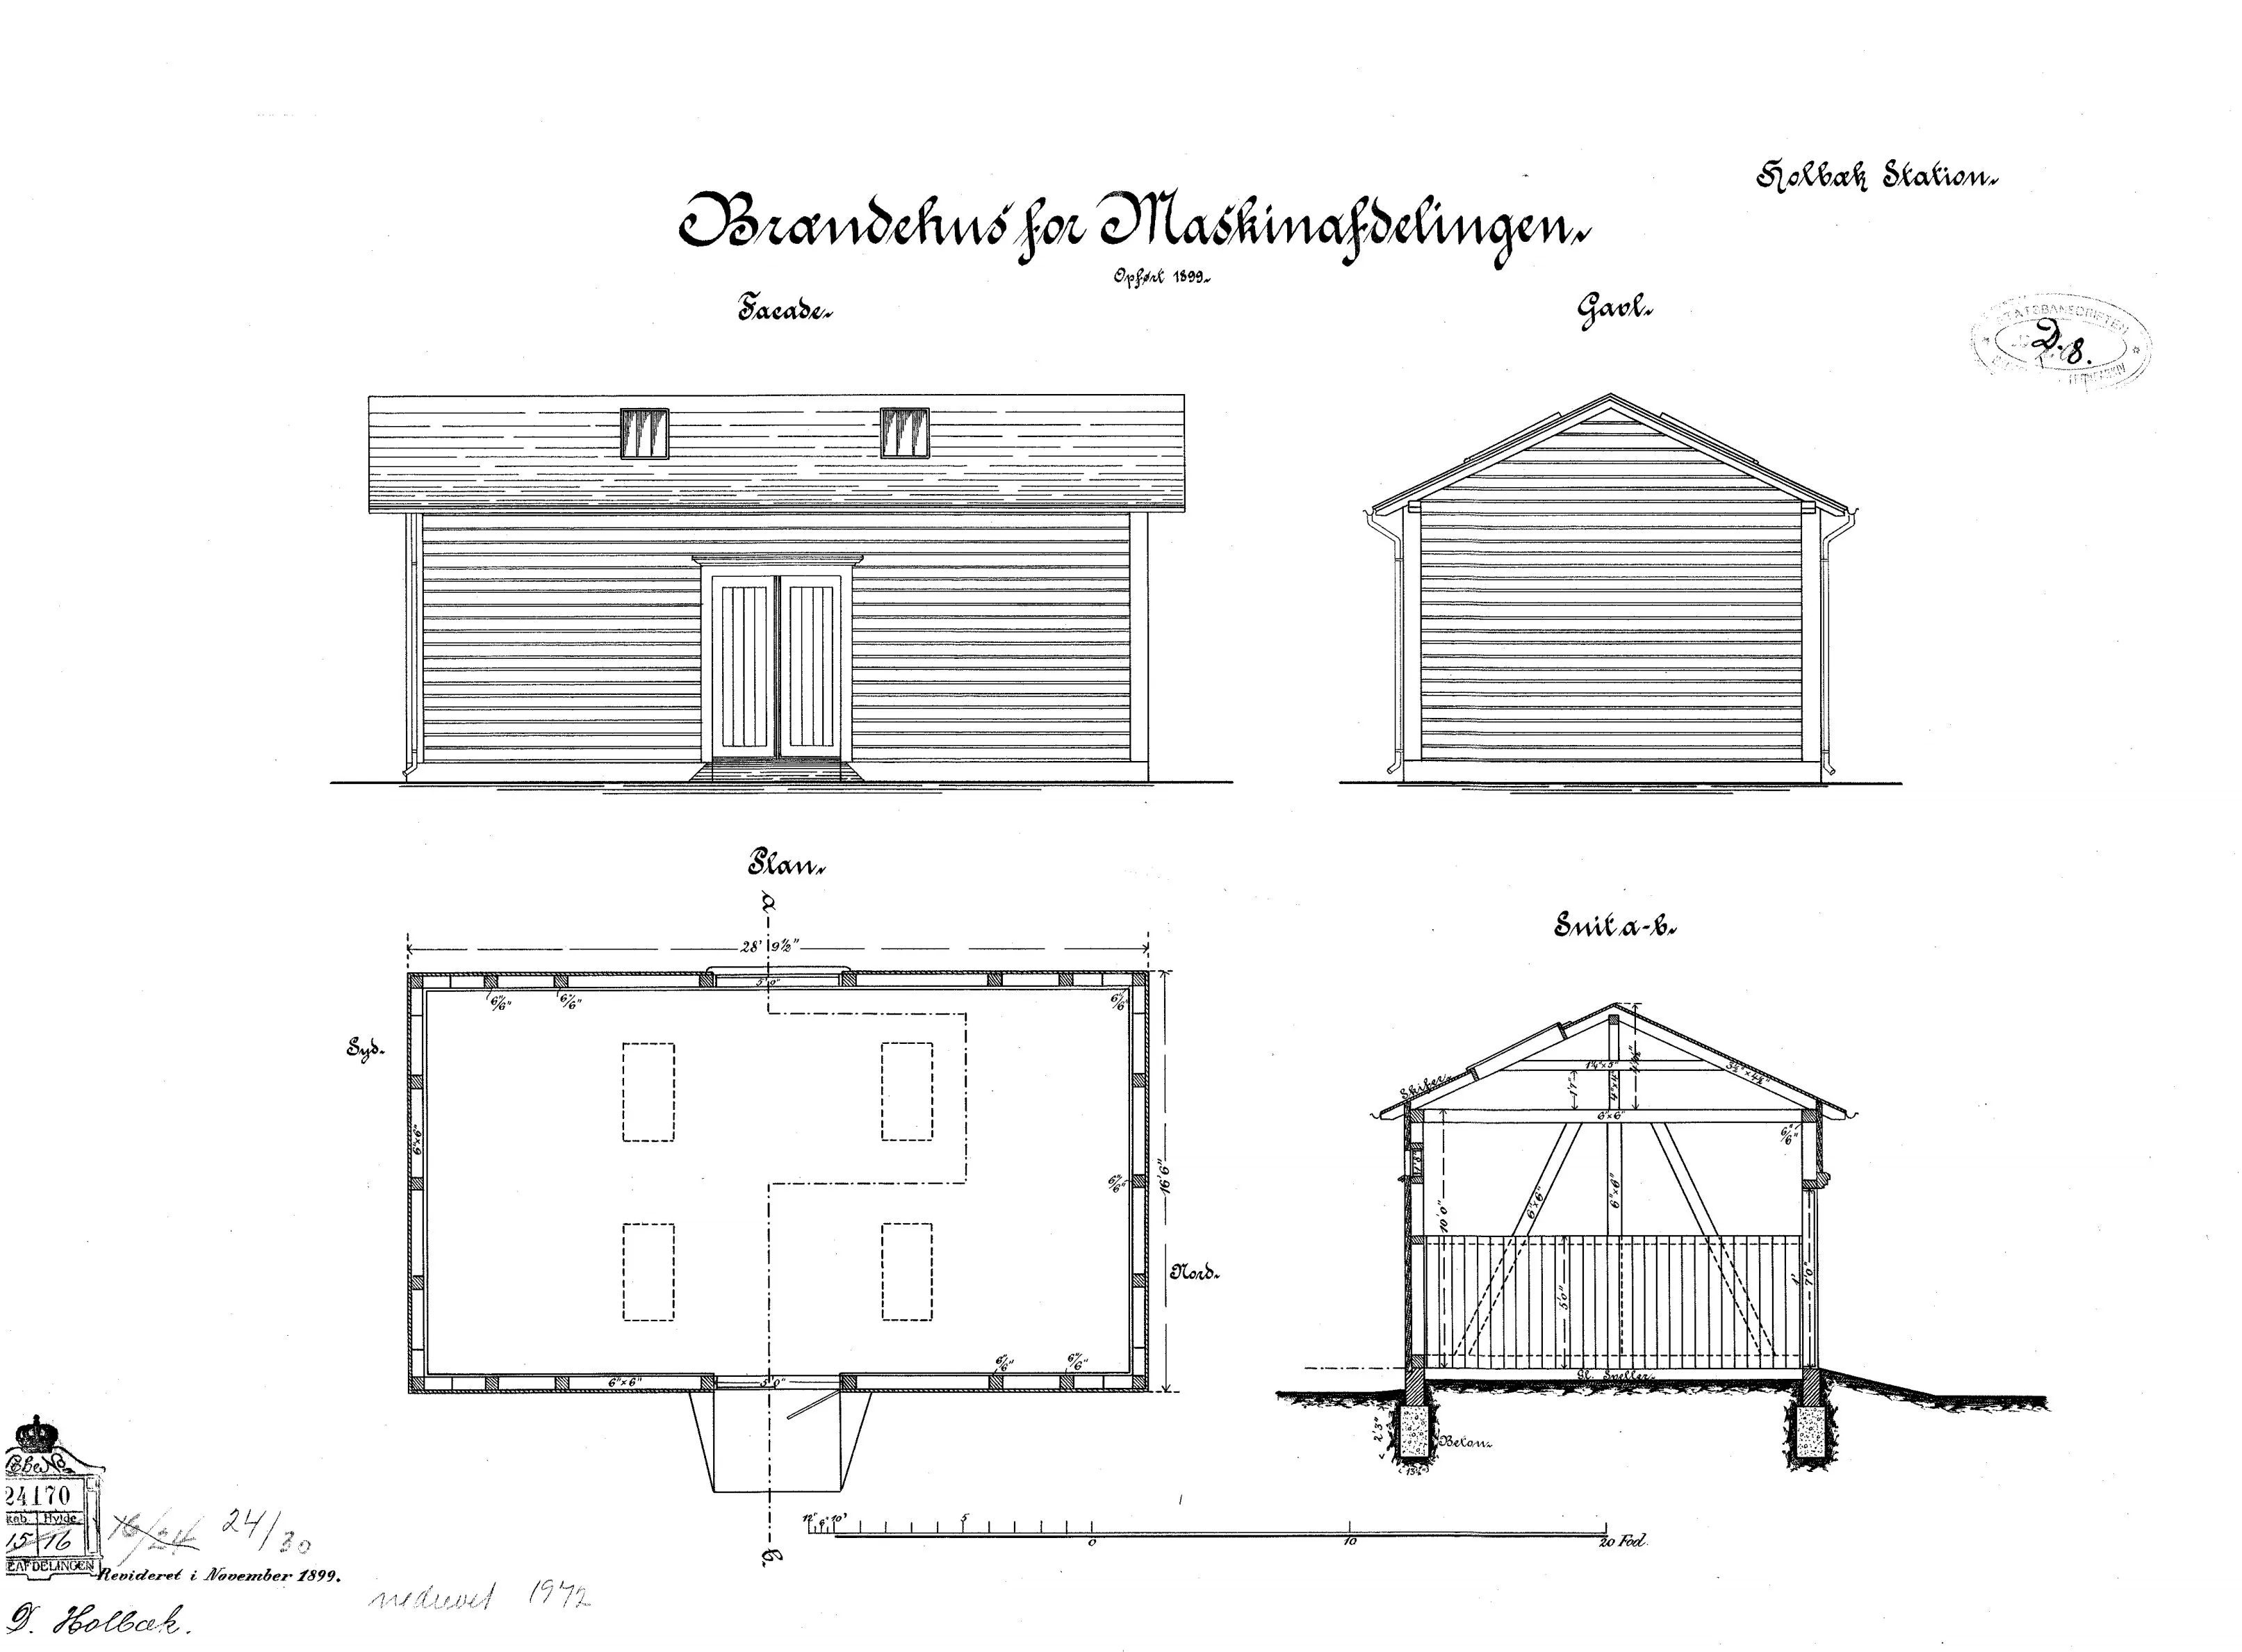 Tegning af Brændehus for Maskinafdelingen ved Holbæk Banegård.